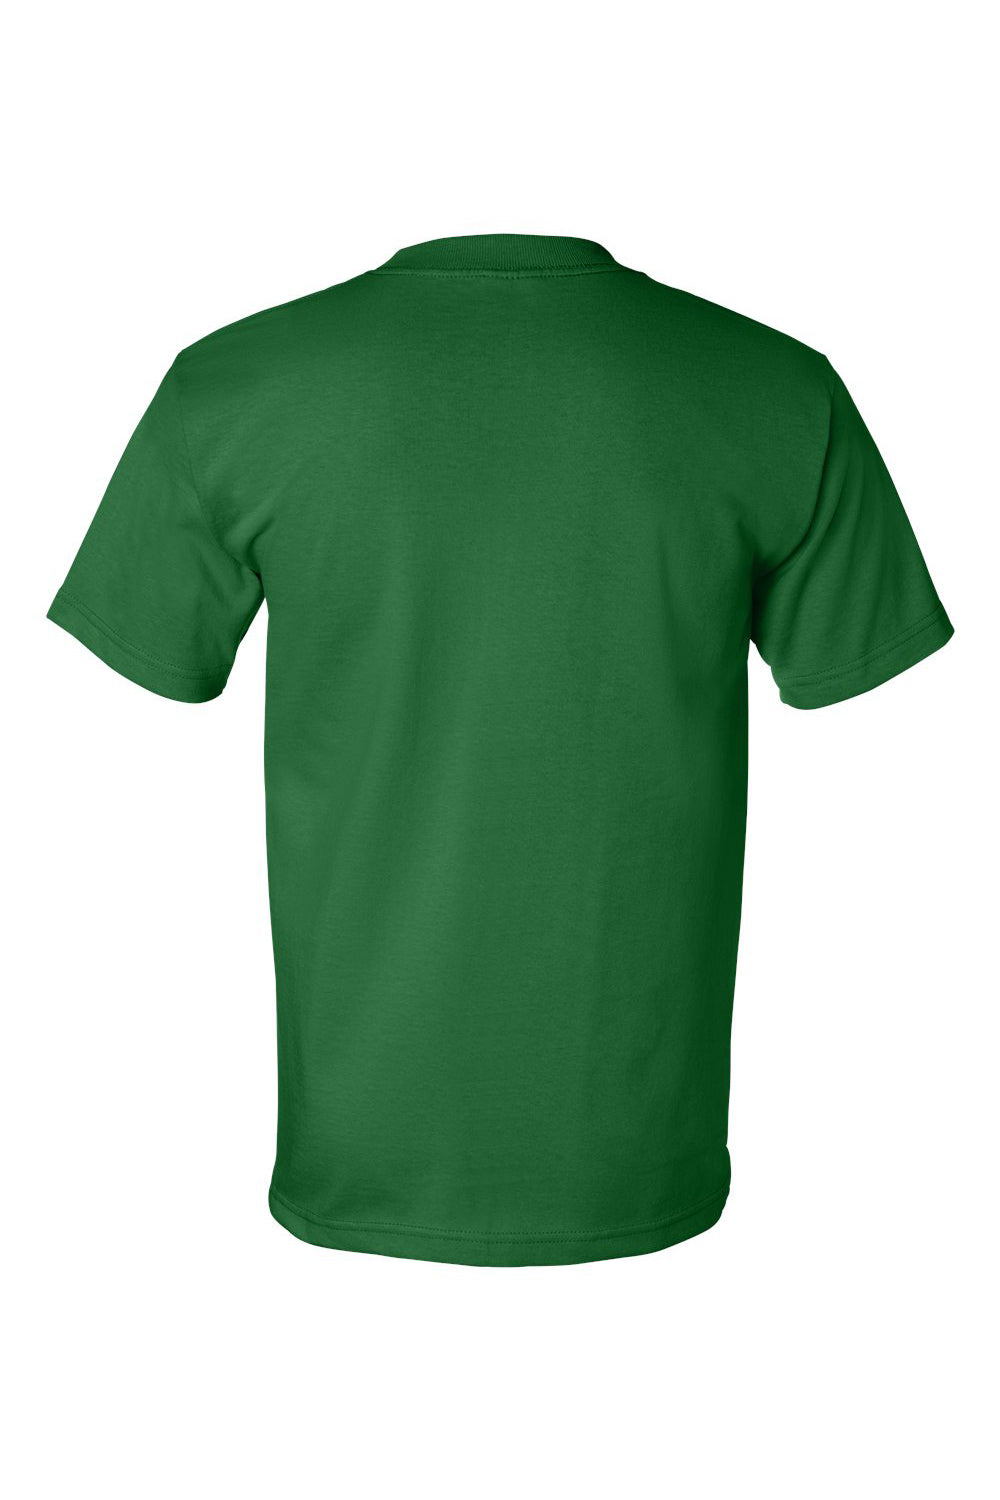 Bayside BA5100 Mens USA Made Short Sleeve Crewneck T-Shirt Kelly Green Flat Back